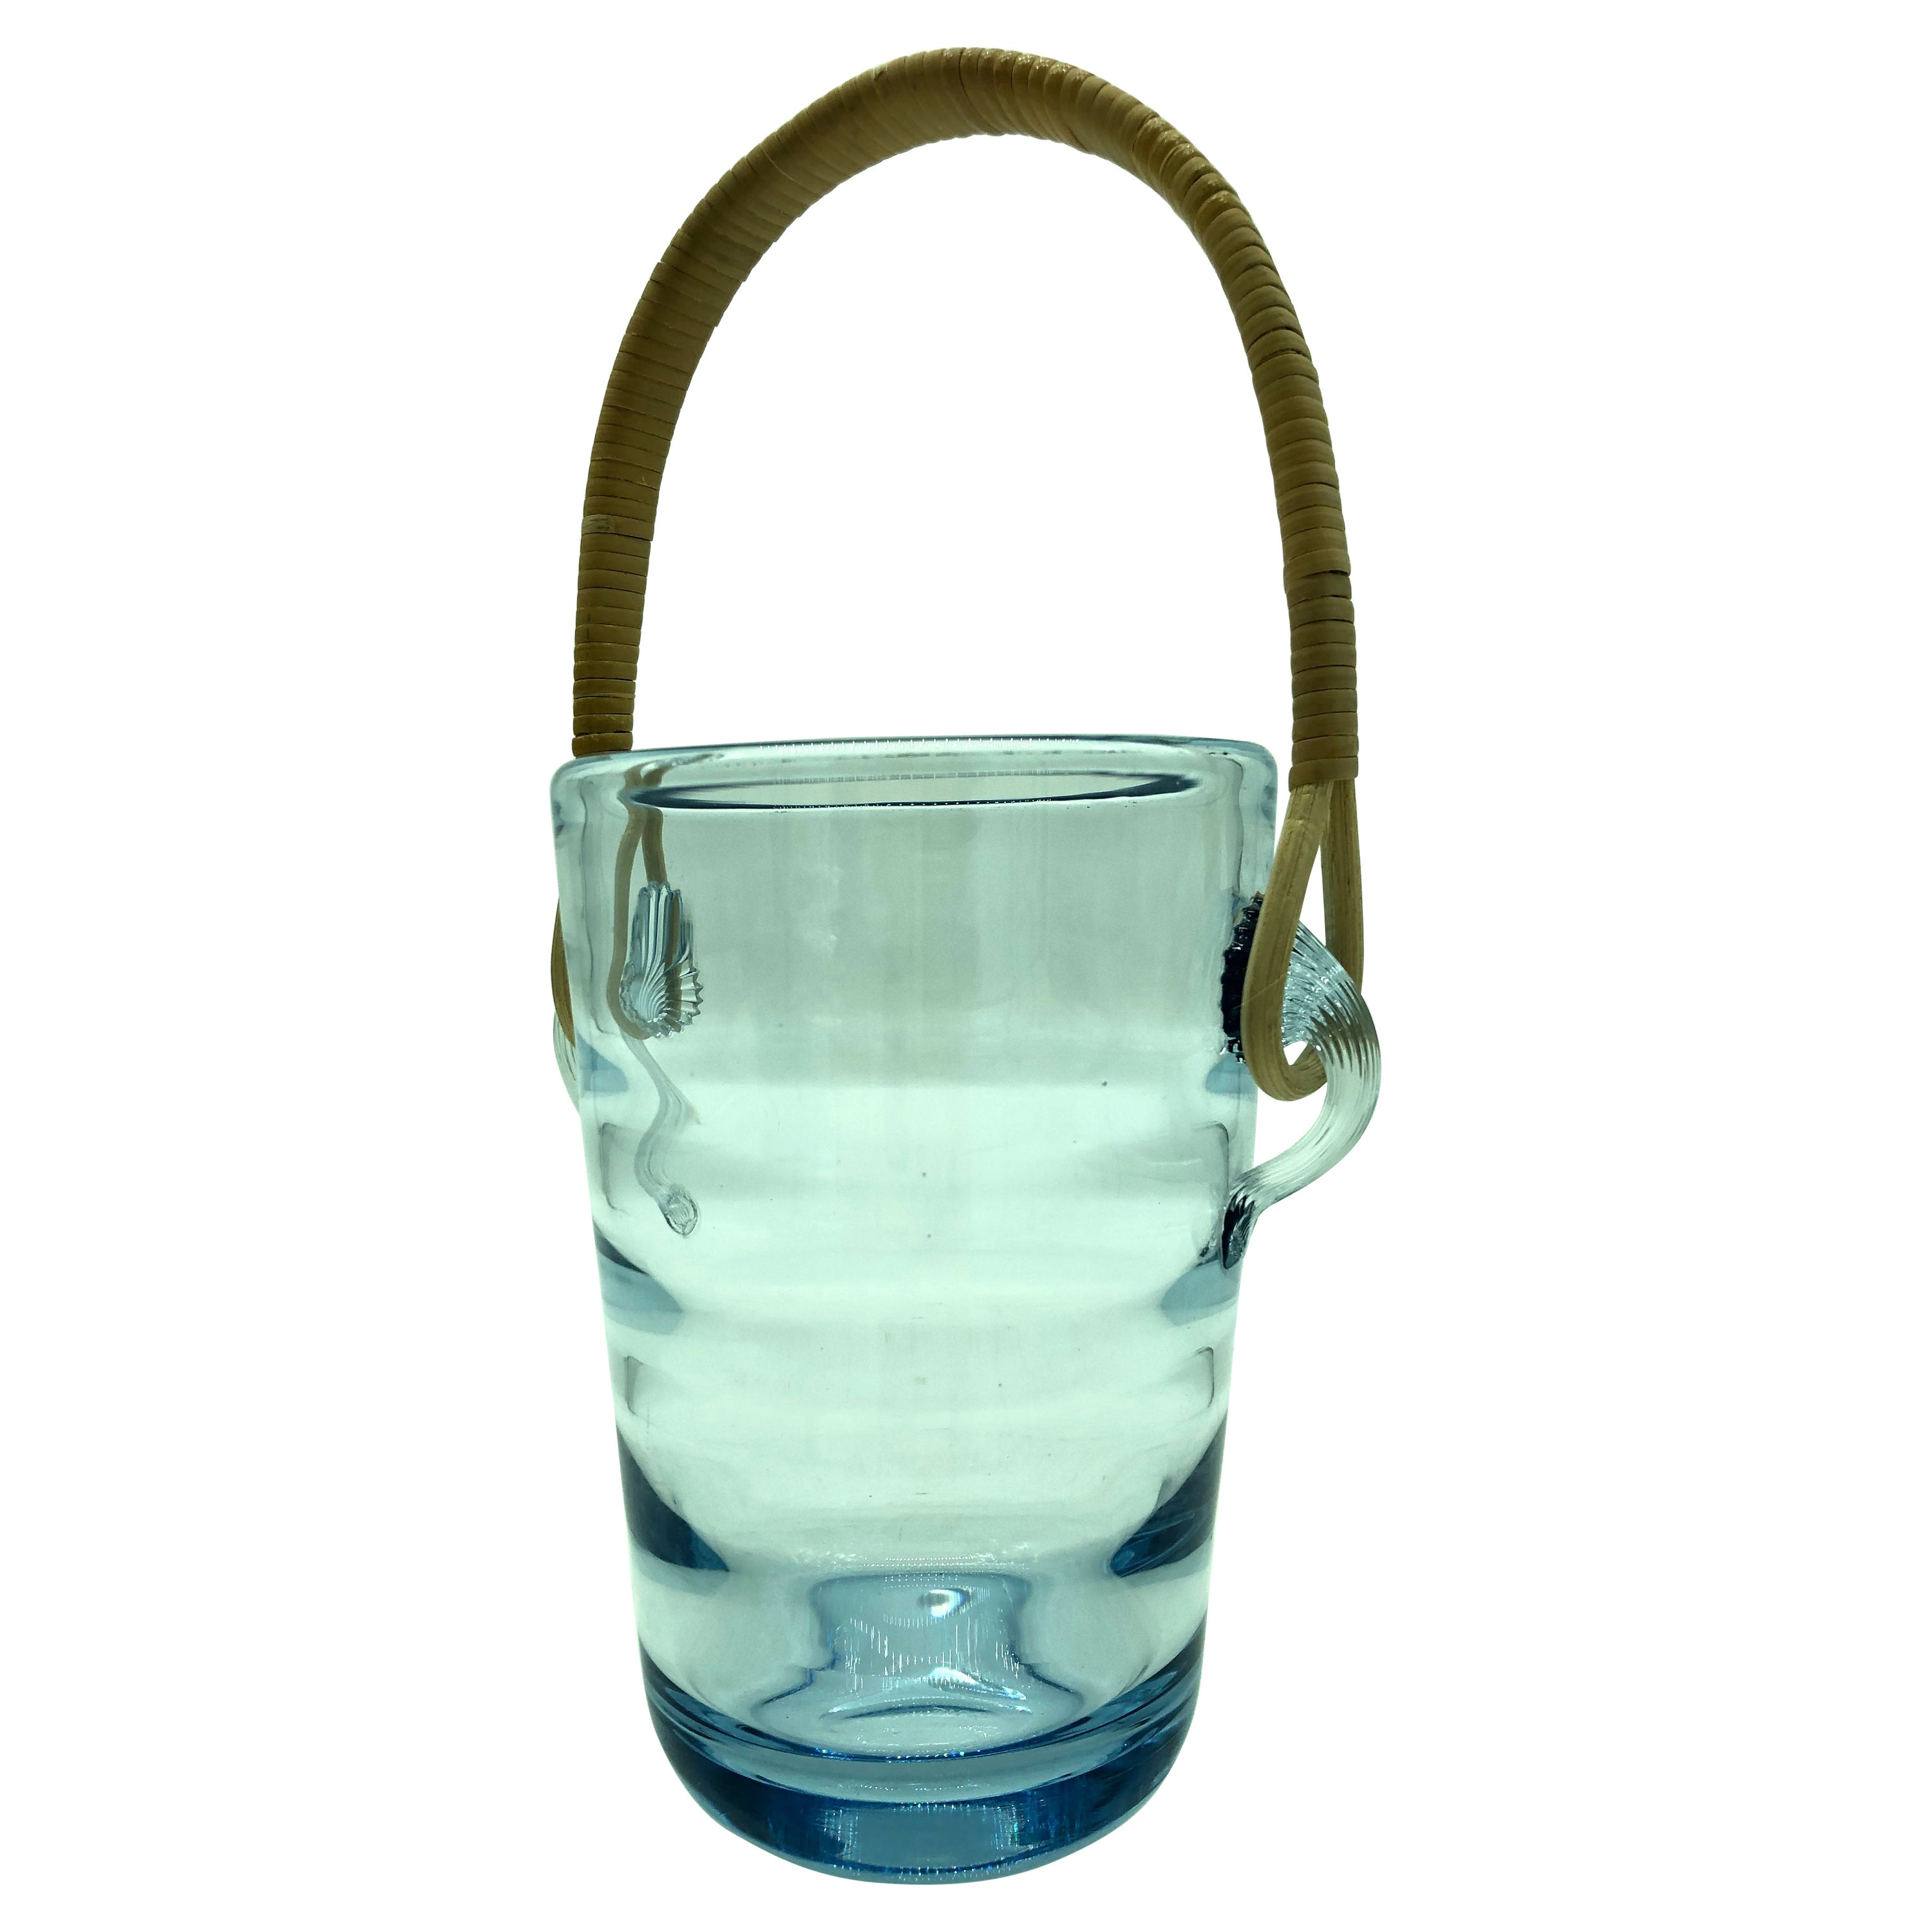 Vintage Ice Bucket by Per Lütken for Holmegaard Glass Works